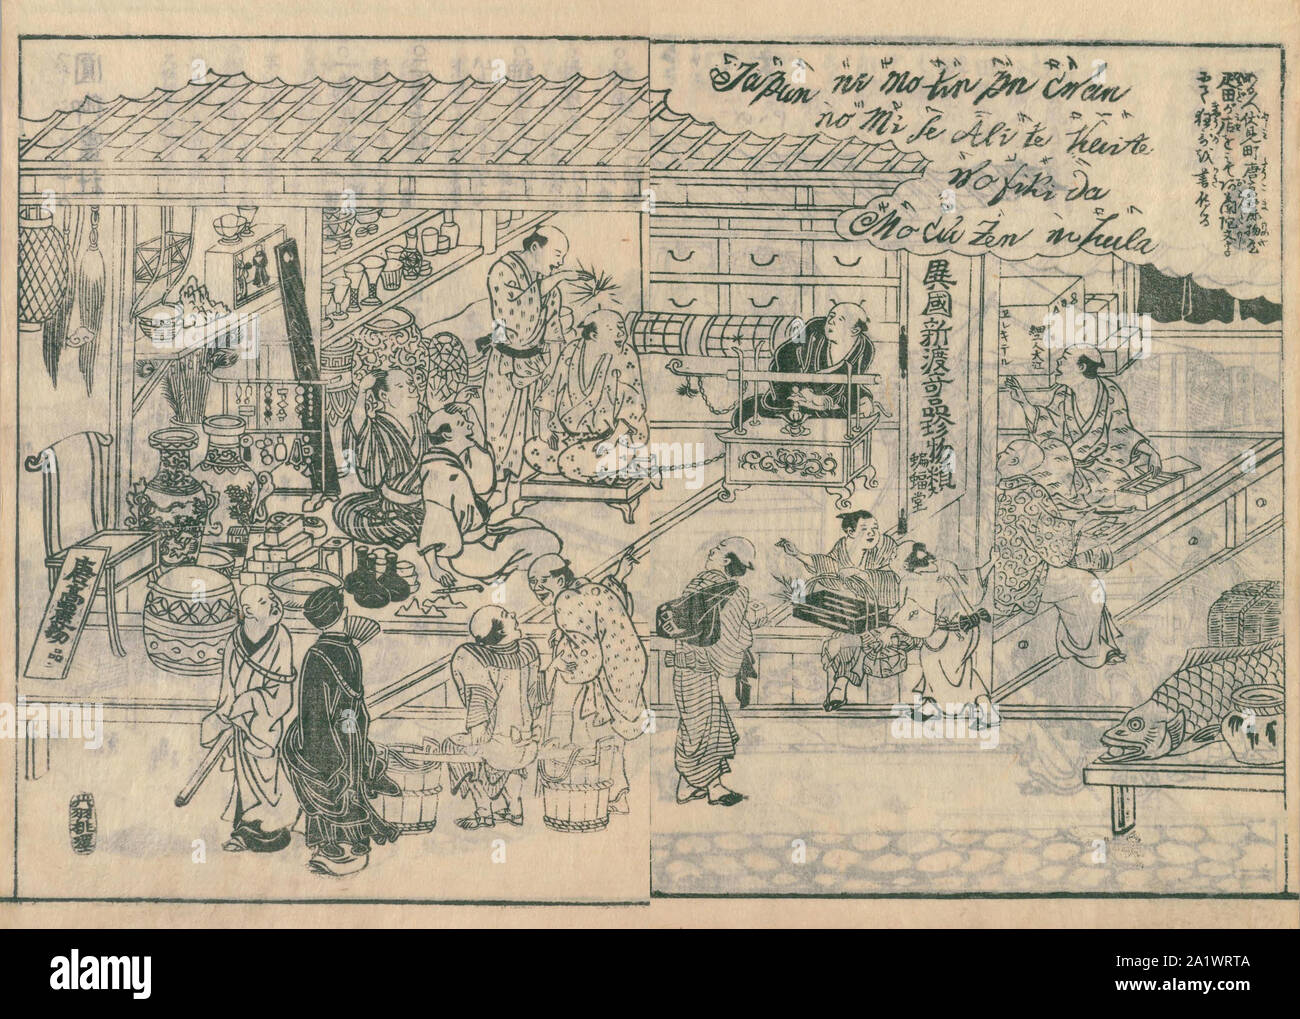 Scène de Karamonoya, de Settsu meisho zue, publié en 1798, Elekiter est vu. Banque D'Images